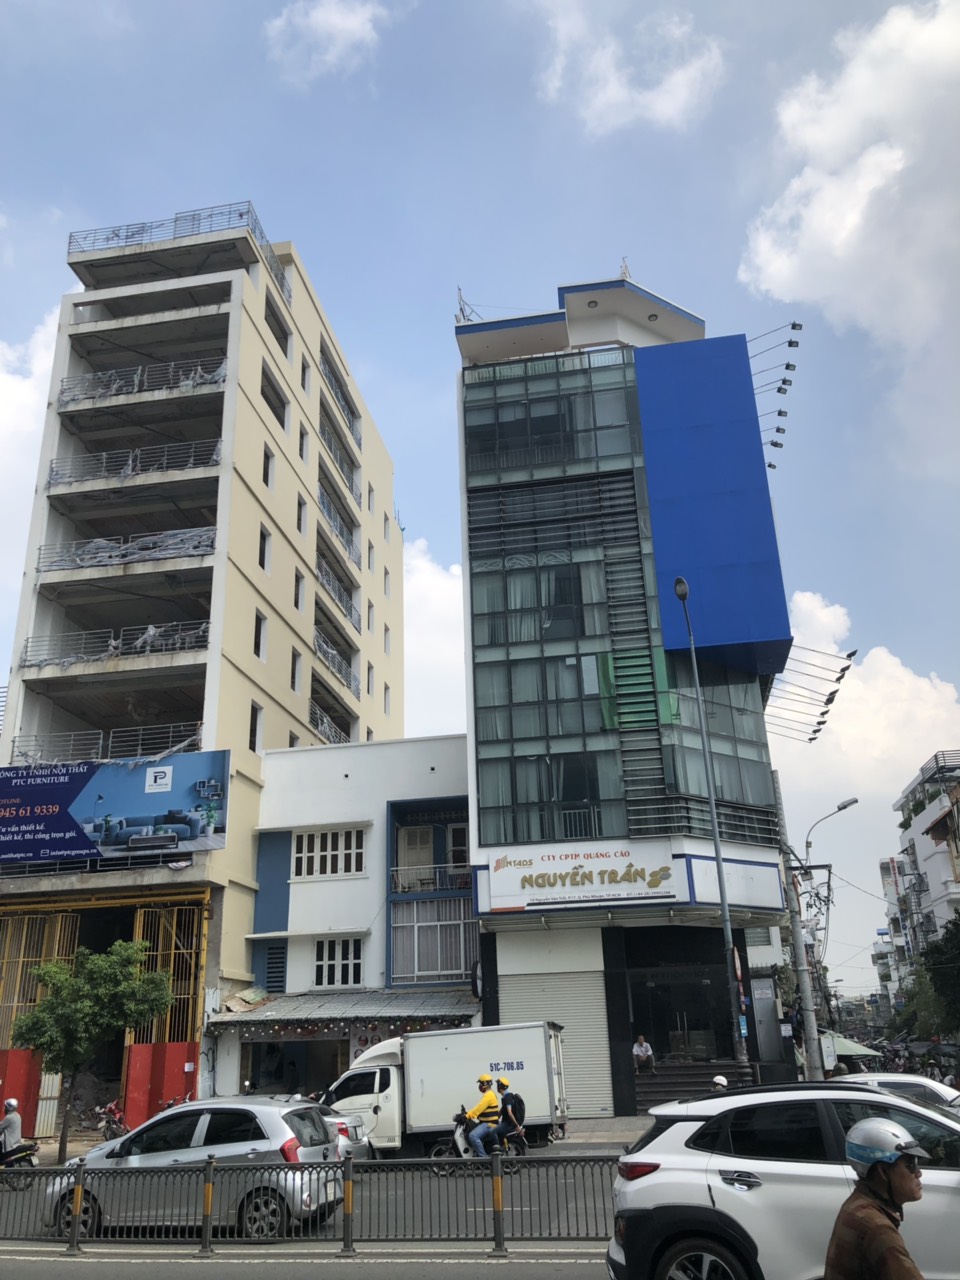 Bán nhà góc 2 mặt tiền Nguyễn Bỉnh Khiêm, DT 98m vuông, Q.1, 1 trệt 5 lầu, cho giá 40 tỷ